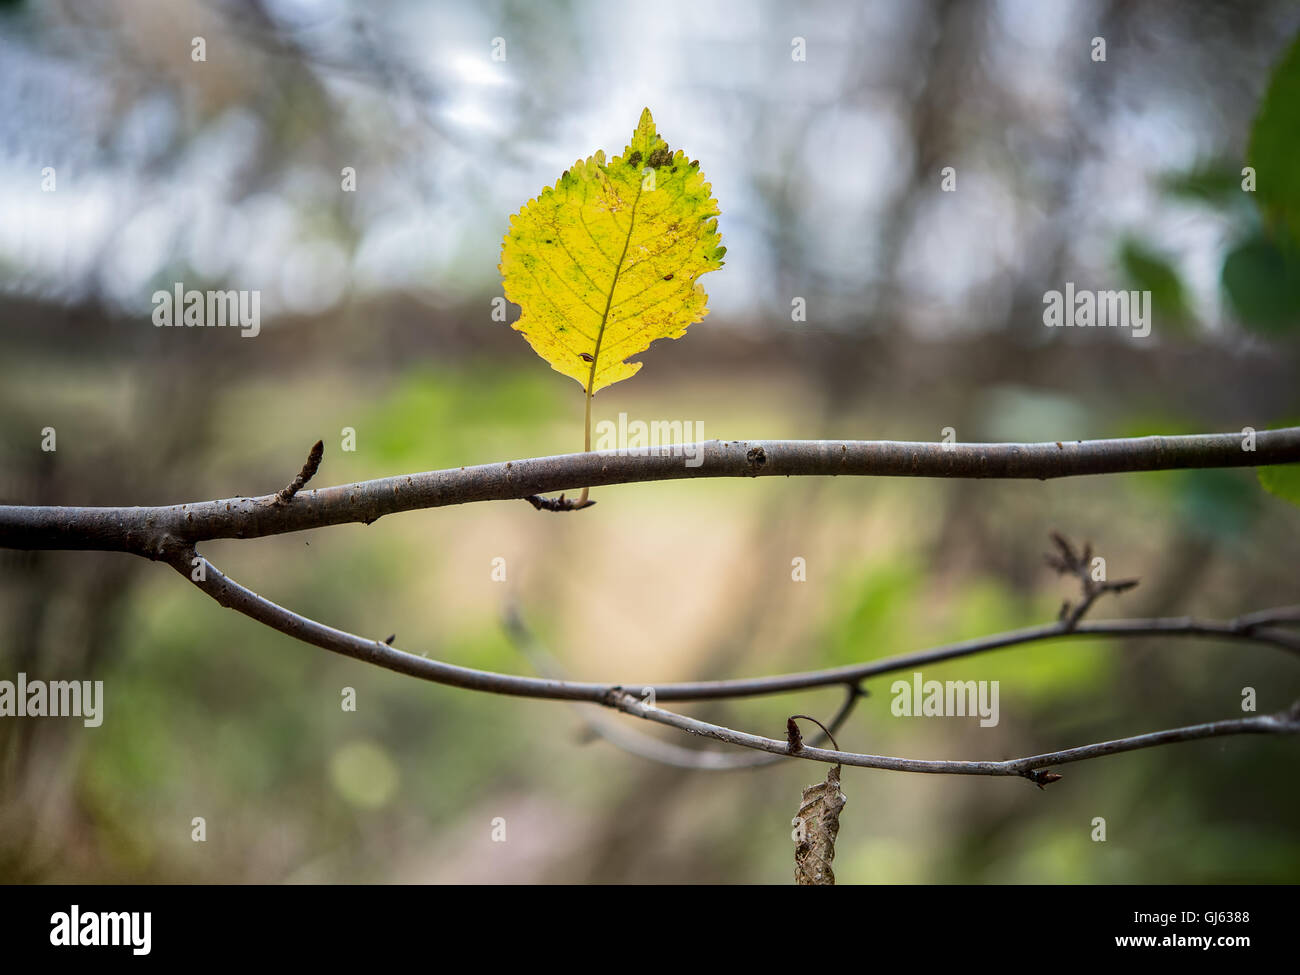 Une seule feuille de hêtre jaune est debout sur une branche dans la forêt Banque D'Images